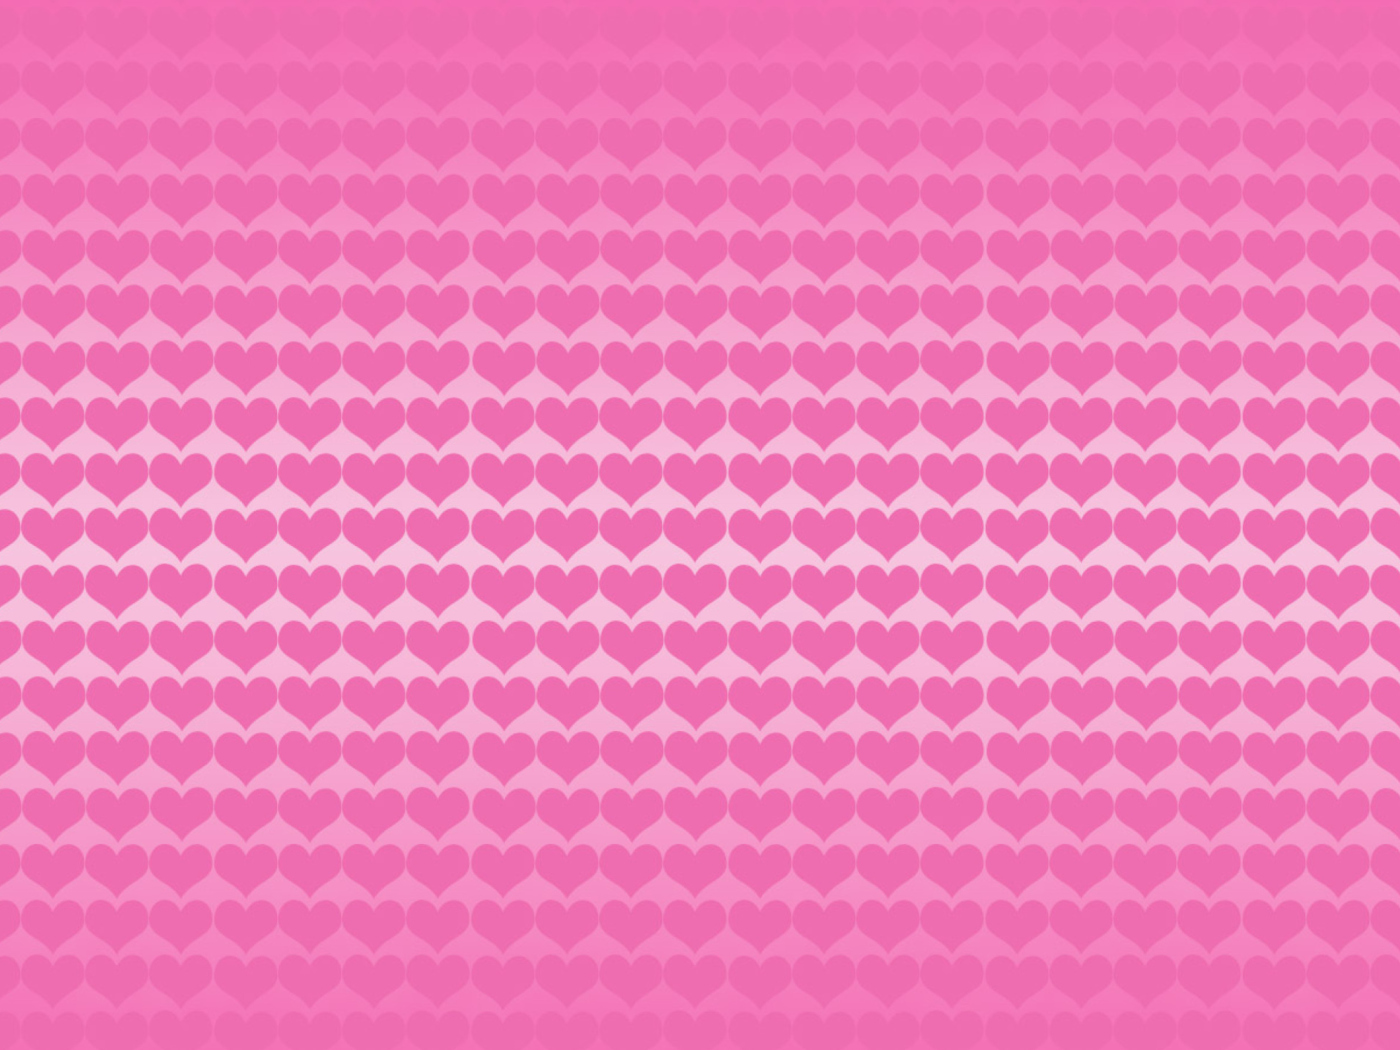 Обои Cute Pink Designs Hearts 1400x1050